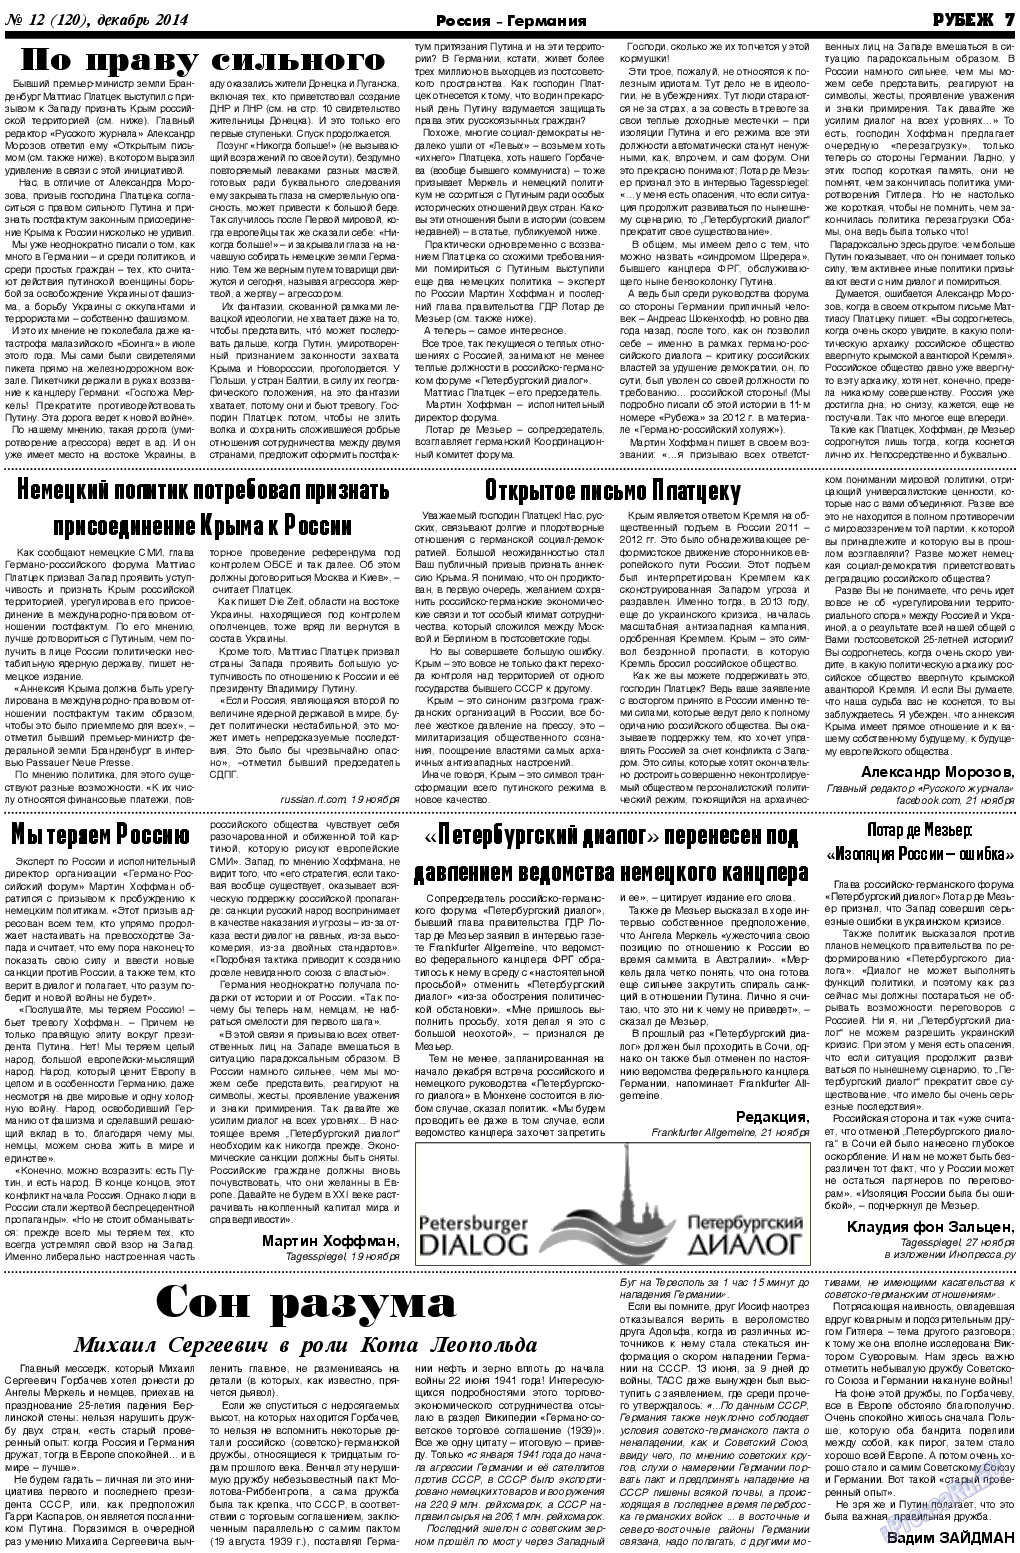 Рубеж (газета). 2014 год, номер 12, стр. 7